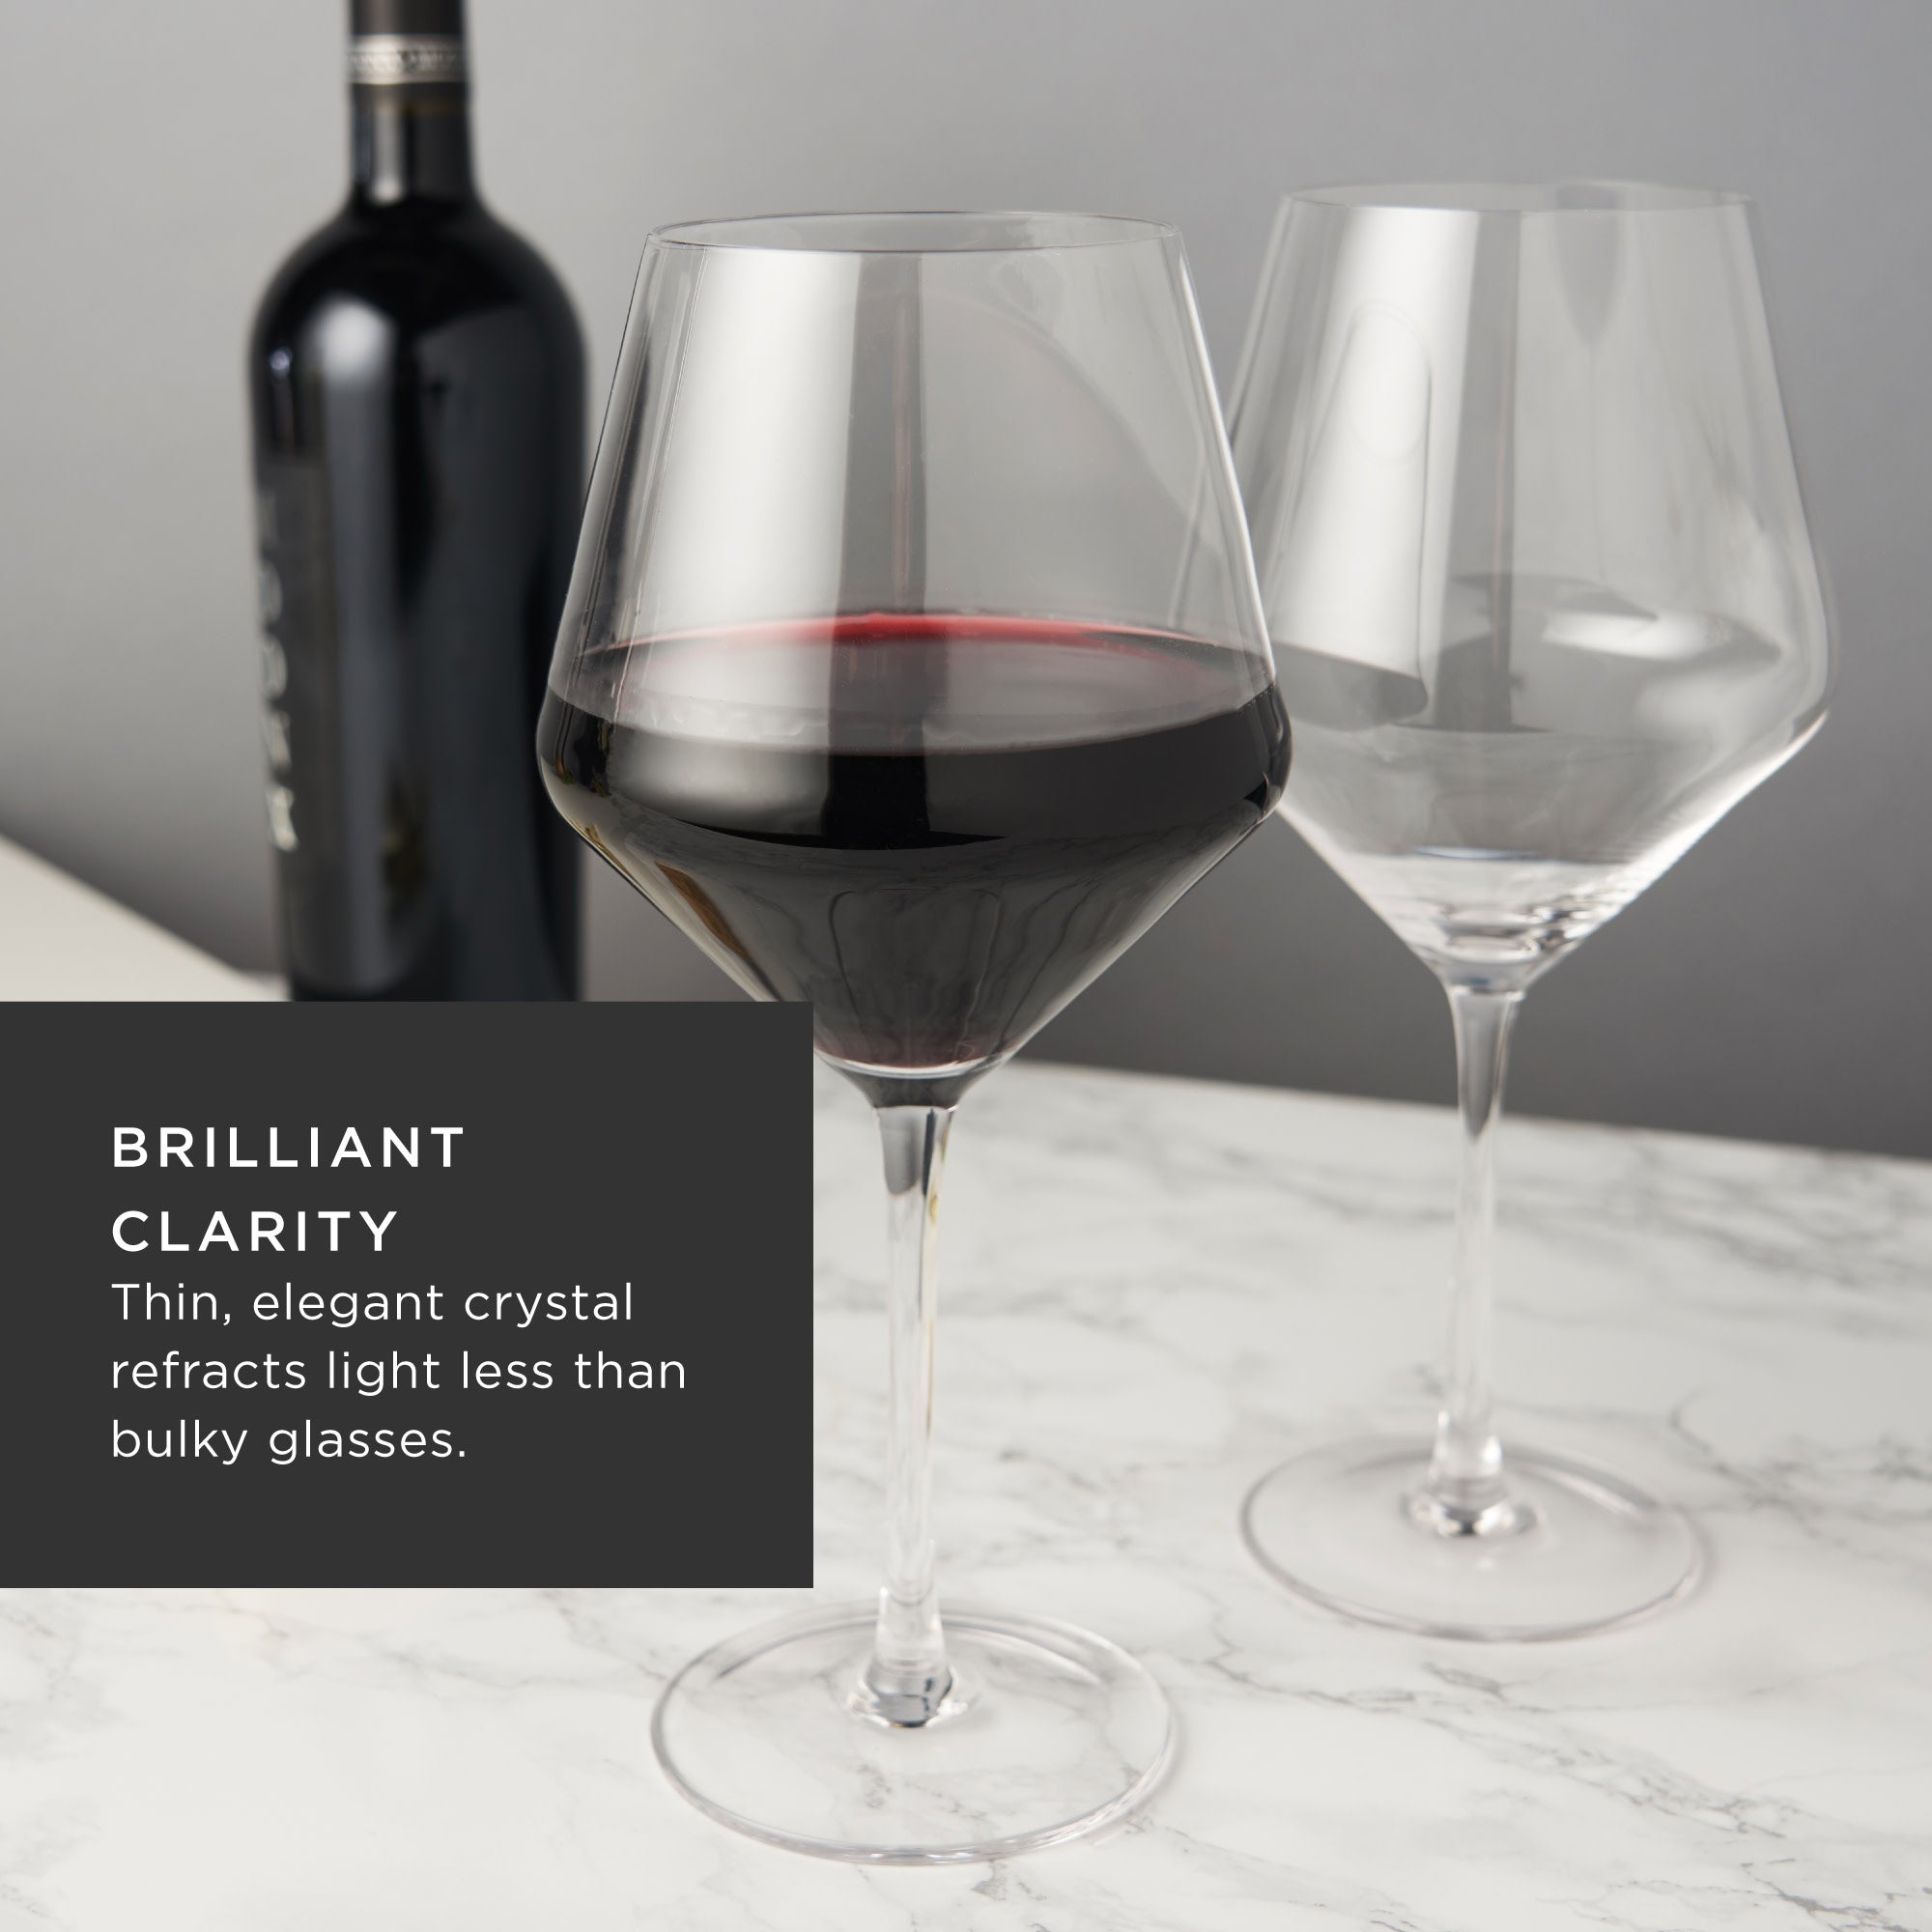 Viski Reserve Inez Crystal Burgundy Glasses, Crystal Red Wine Glasses,  European Made Glassware, Stemmed Wine Glass Set, 31 Oz, Set of 4